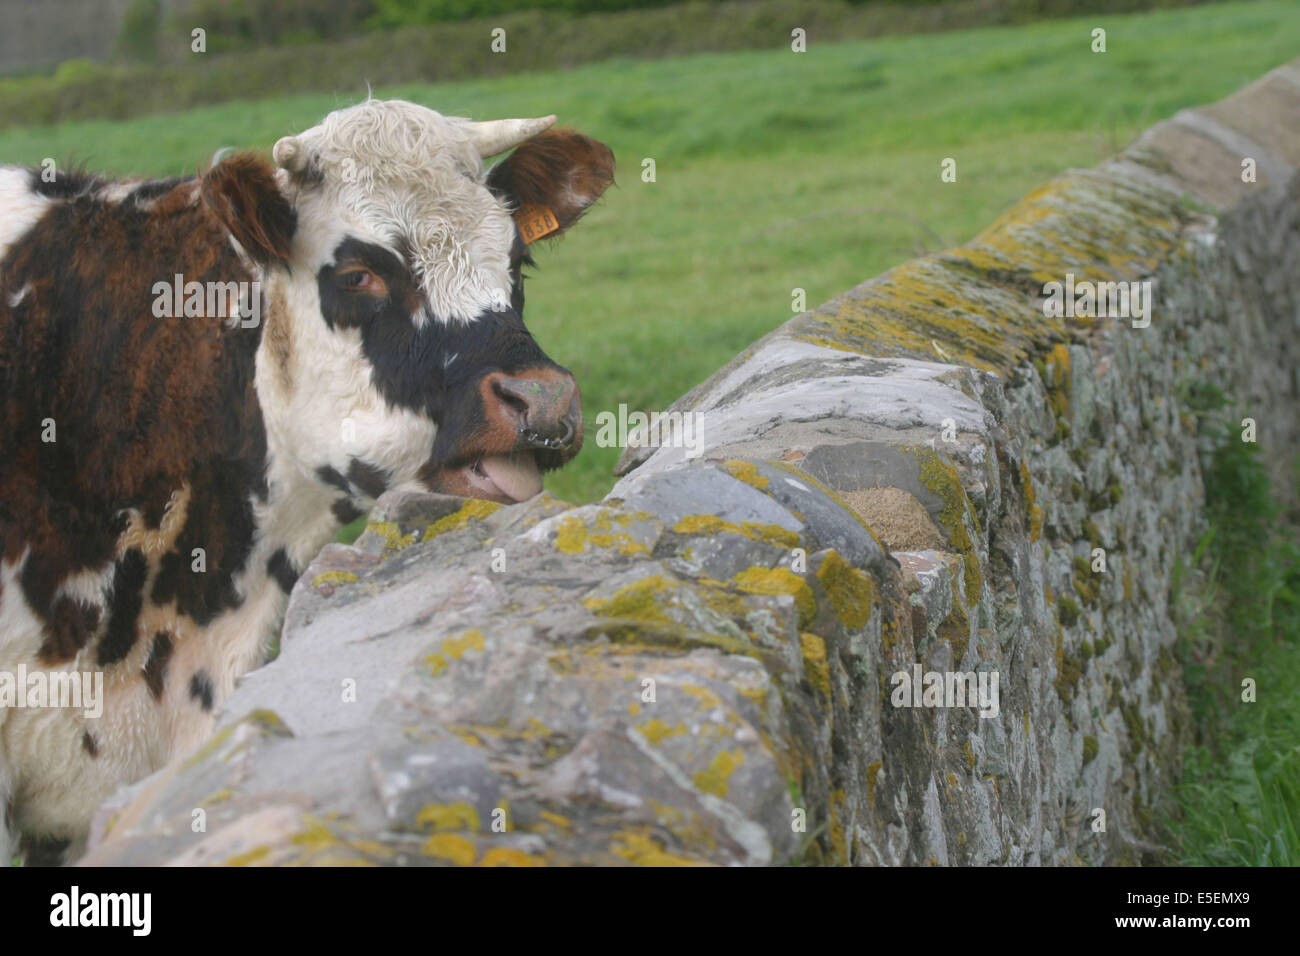 France, Normandie, manche, cotentin, la haye, anse de vauville, vache normande au bord du chemin, muret de pierre, Banque D'Images